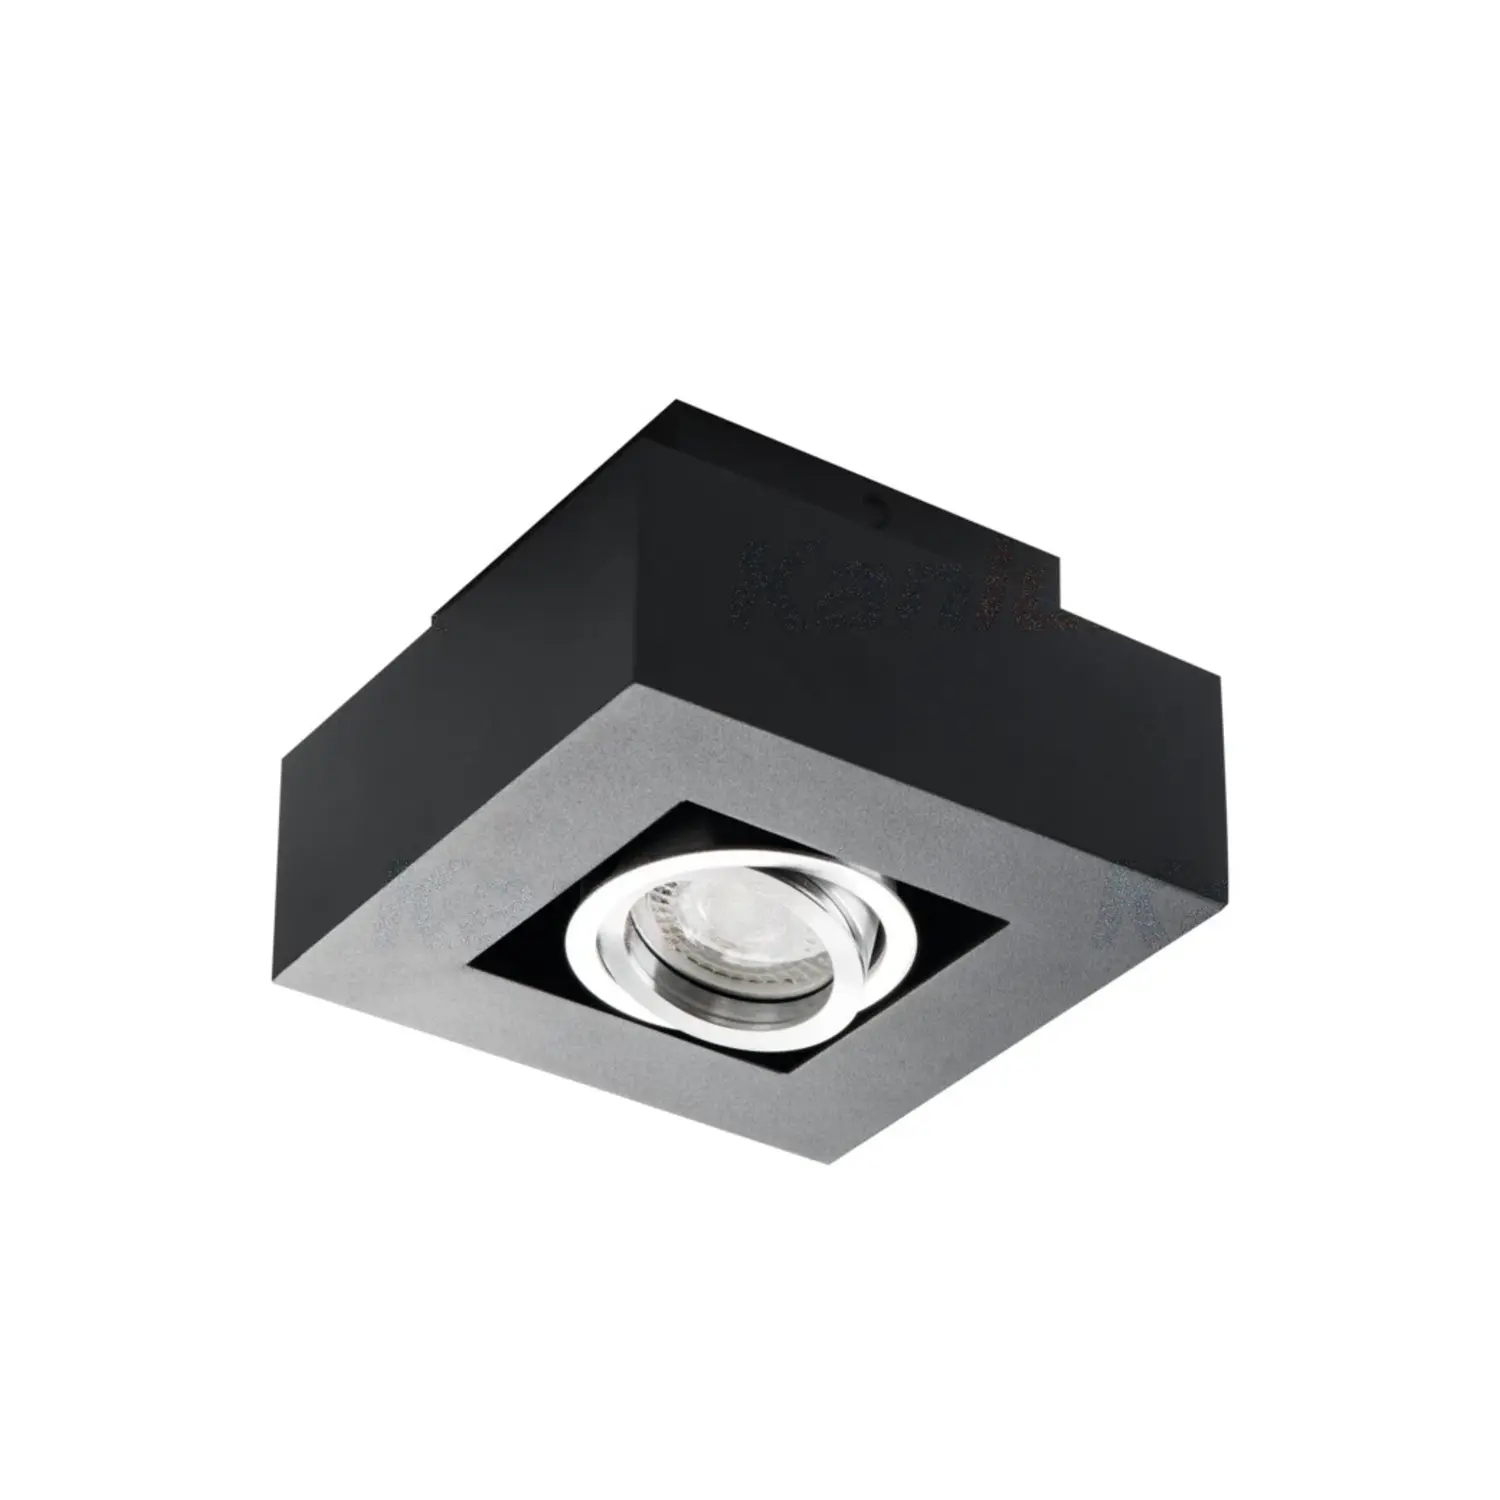 immagine faretto decorativo stobi dlp orientabile nero IP20 interno GU10 CE alluminio 220-240 volt 1 luce kan 26830